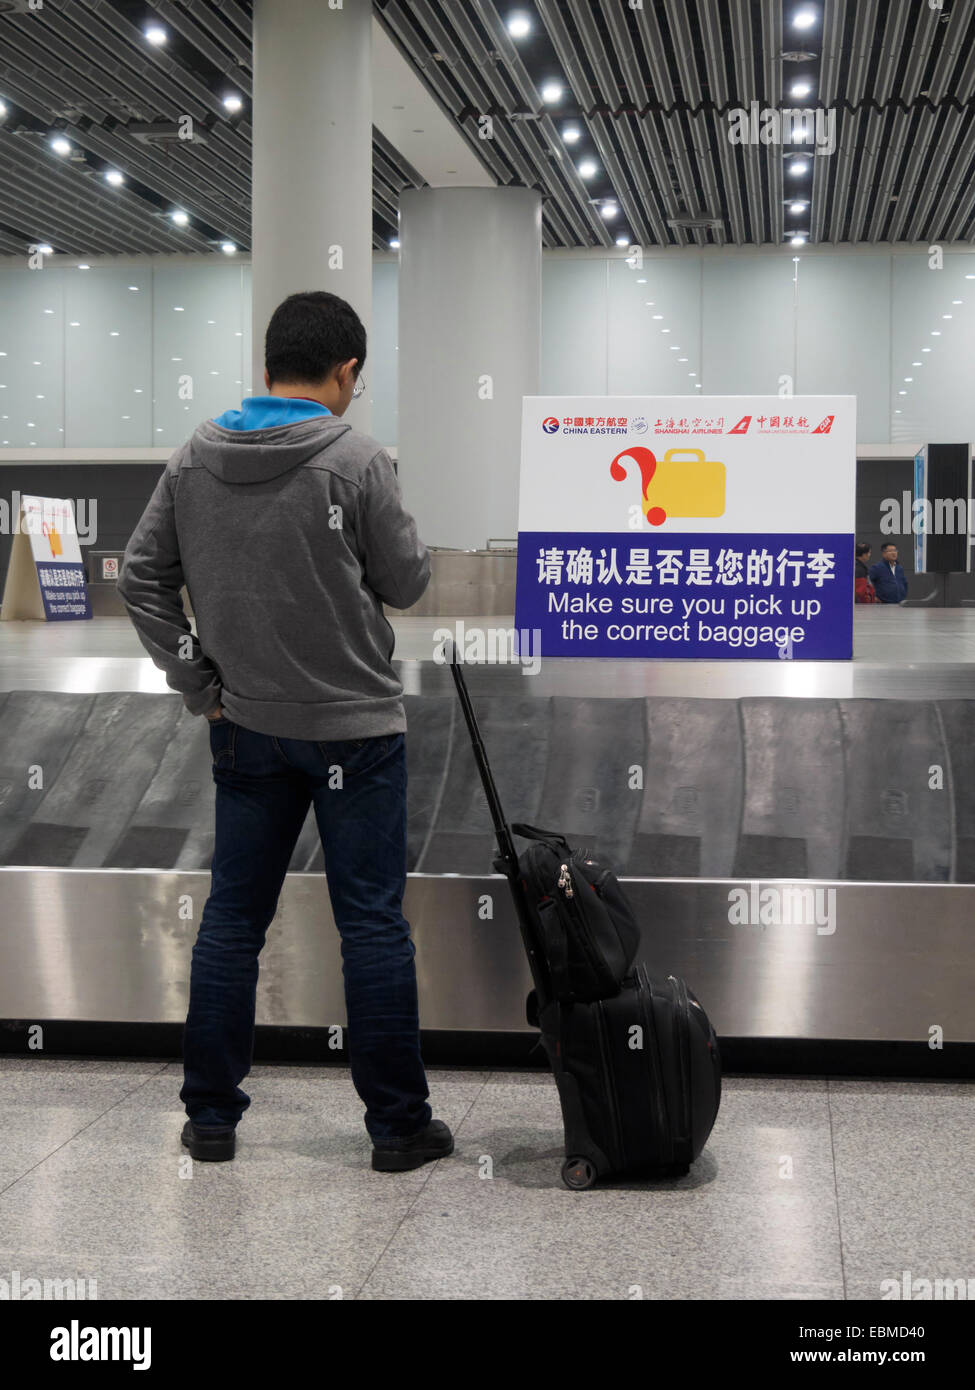 Personne en attente d'assurance au carrousel des bagages à l'aéroport international de Xianyang Xian en Chine, Asie Banque D'Images